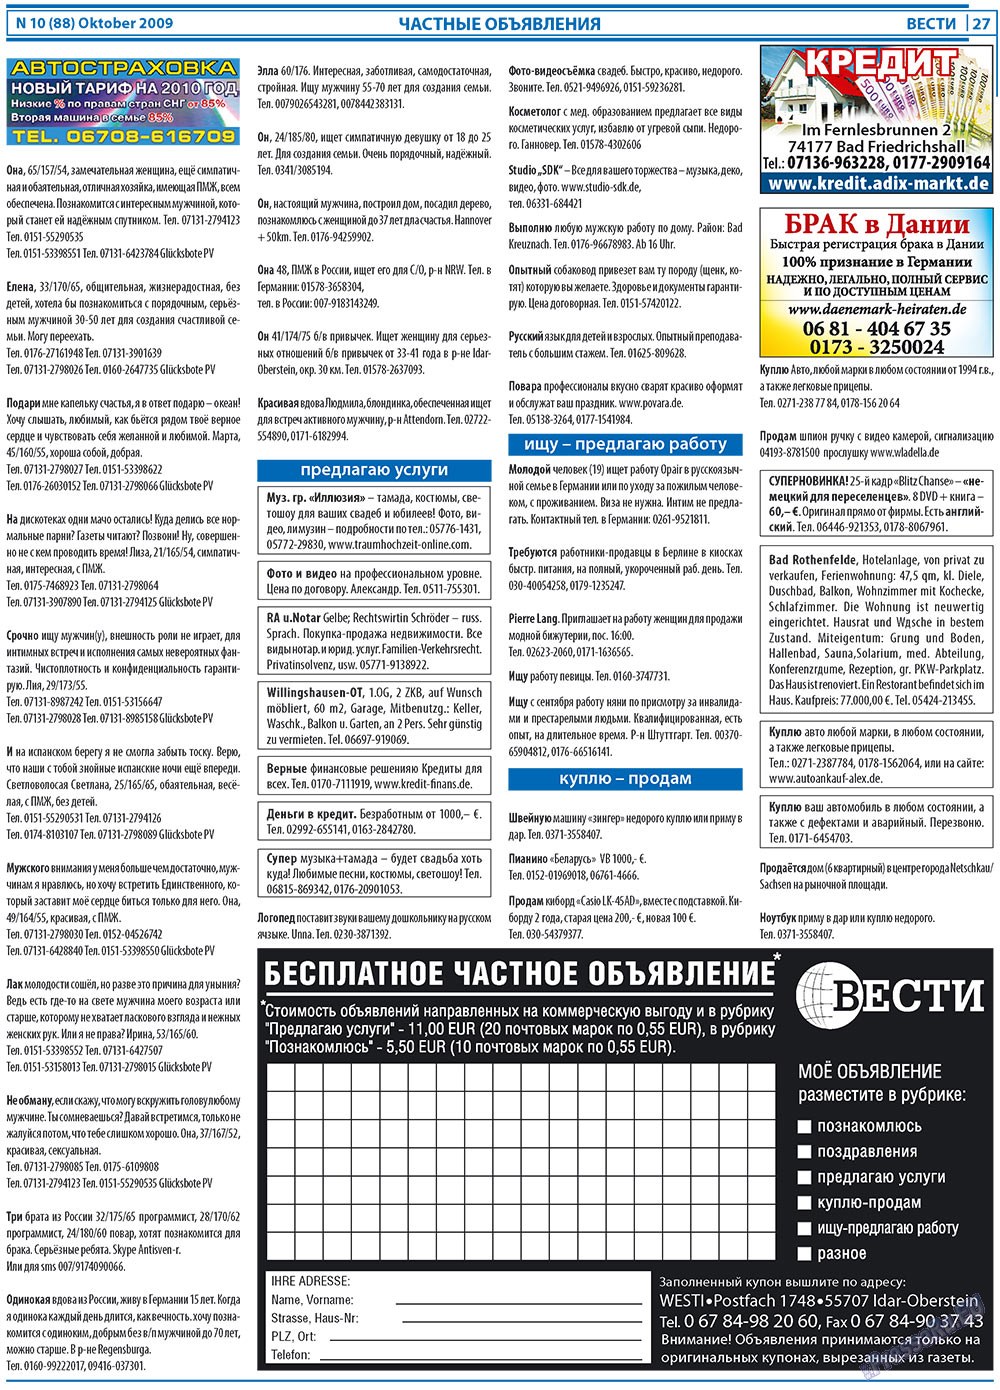 Вести, газета. 2009 №10 стр.27